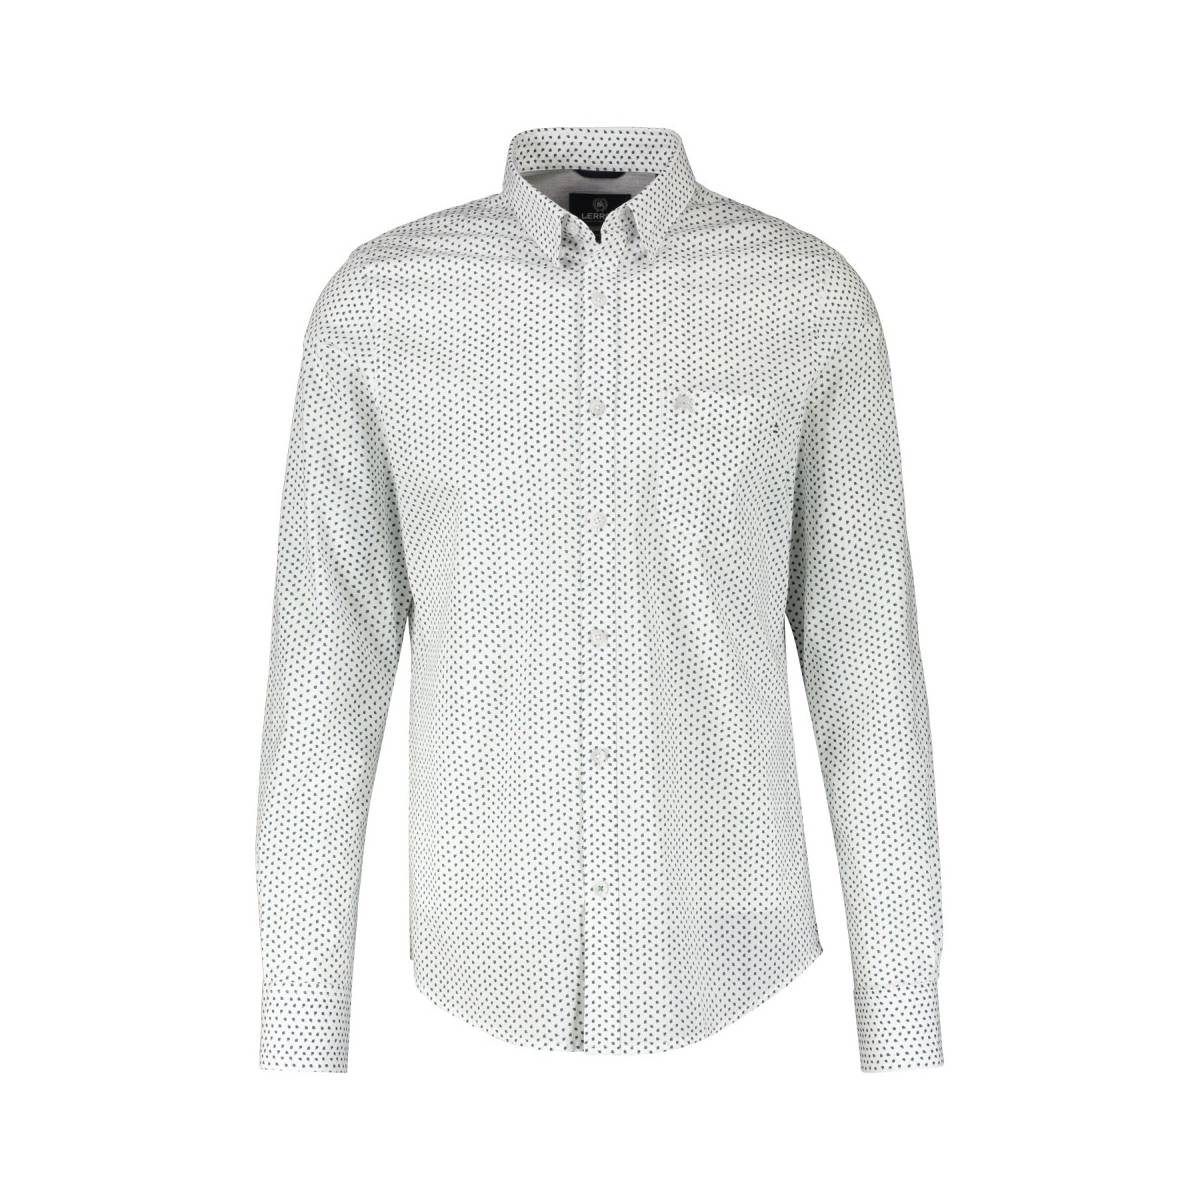 LERROS  hemden wit -  model 23d1471 - Herenkleding hemden wit